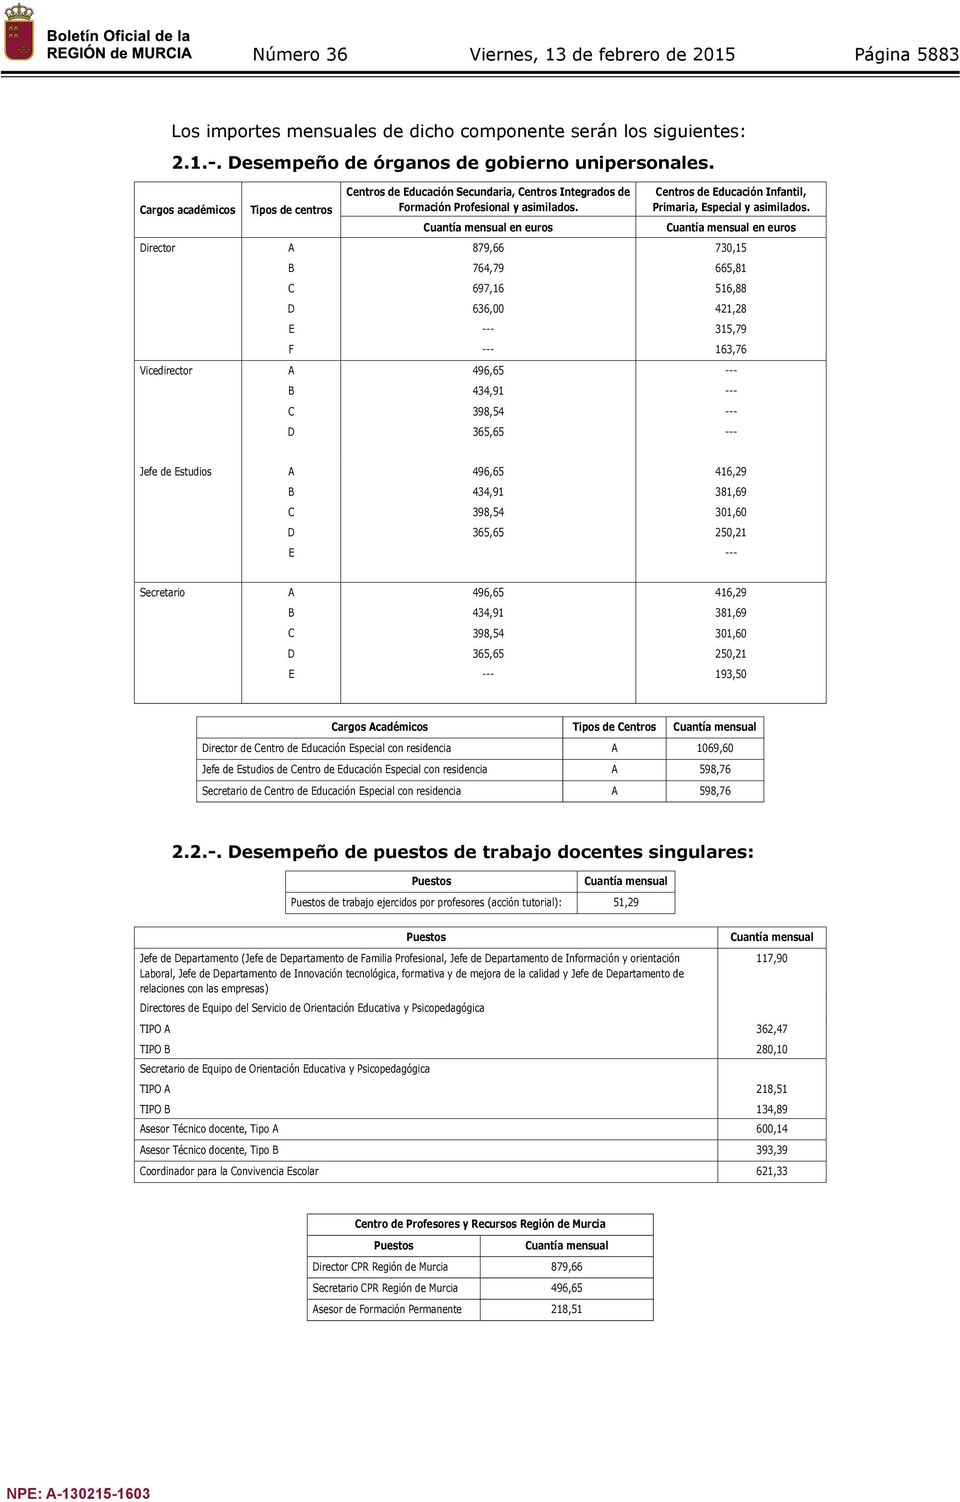 Cuantía mensual en euros Centros de Educación Infantil, Primaria, Especial y asimilados.